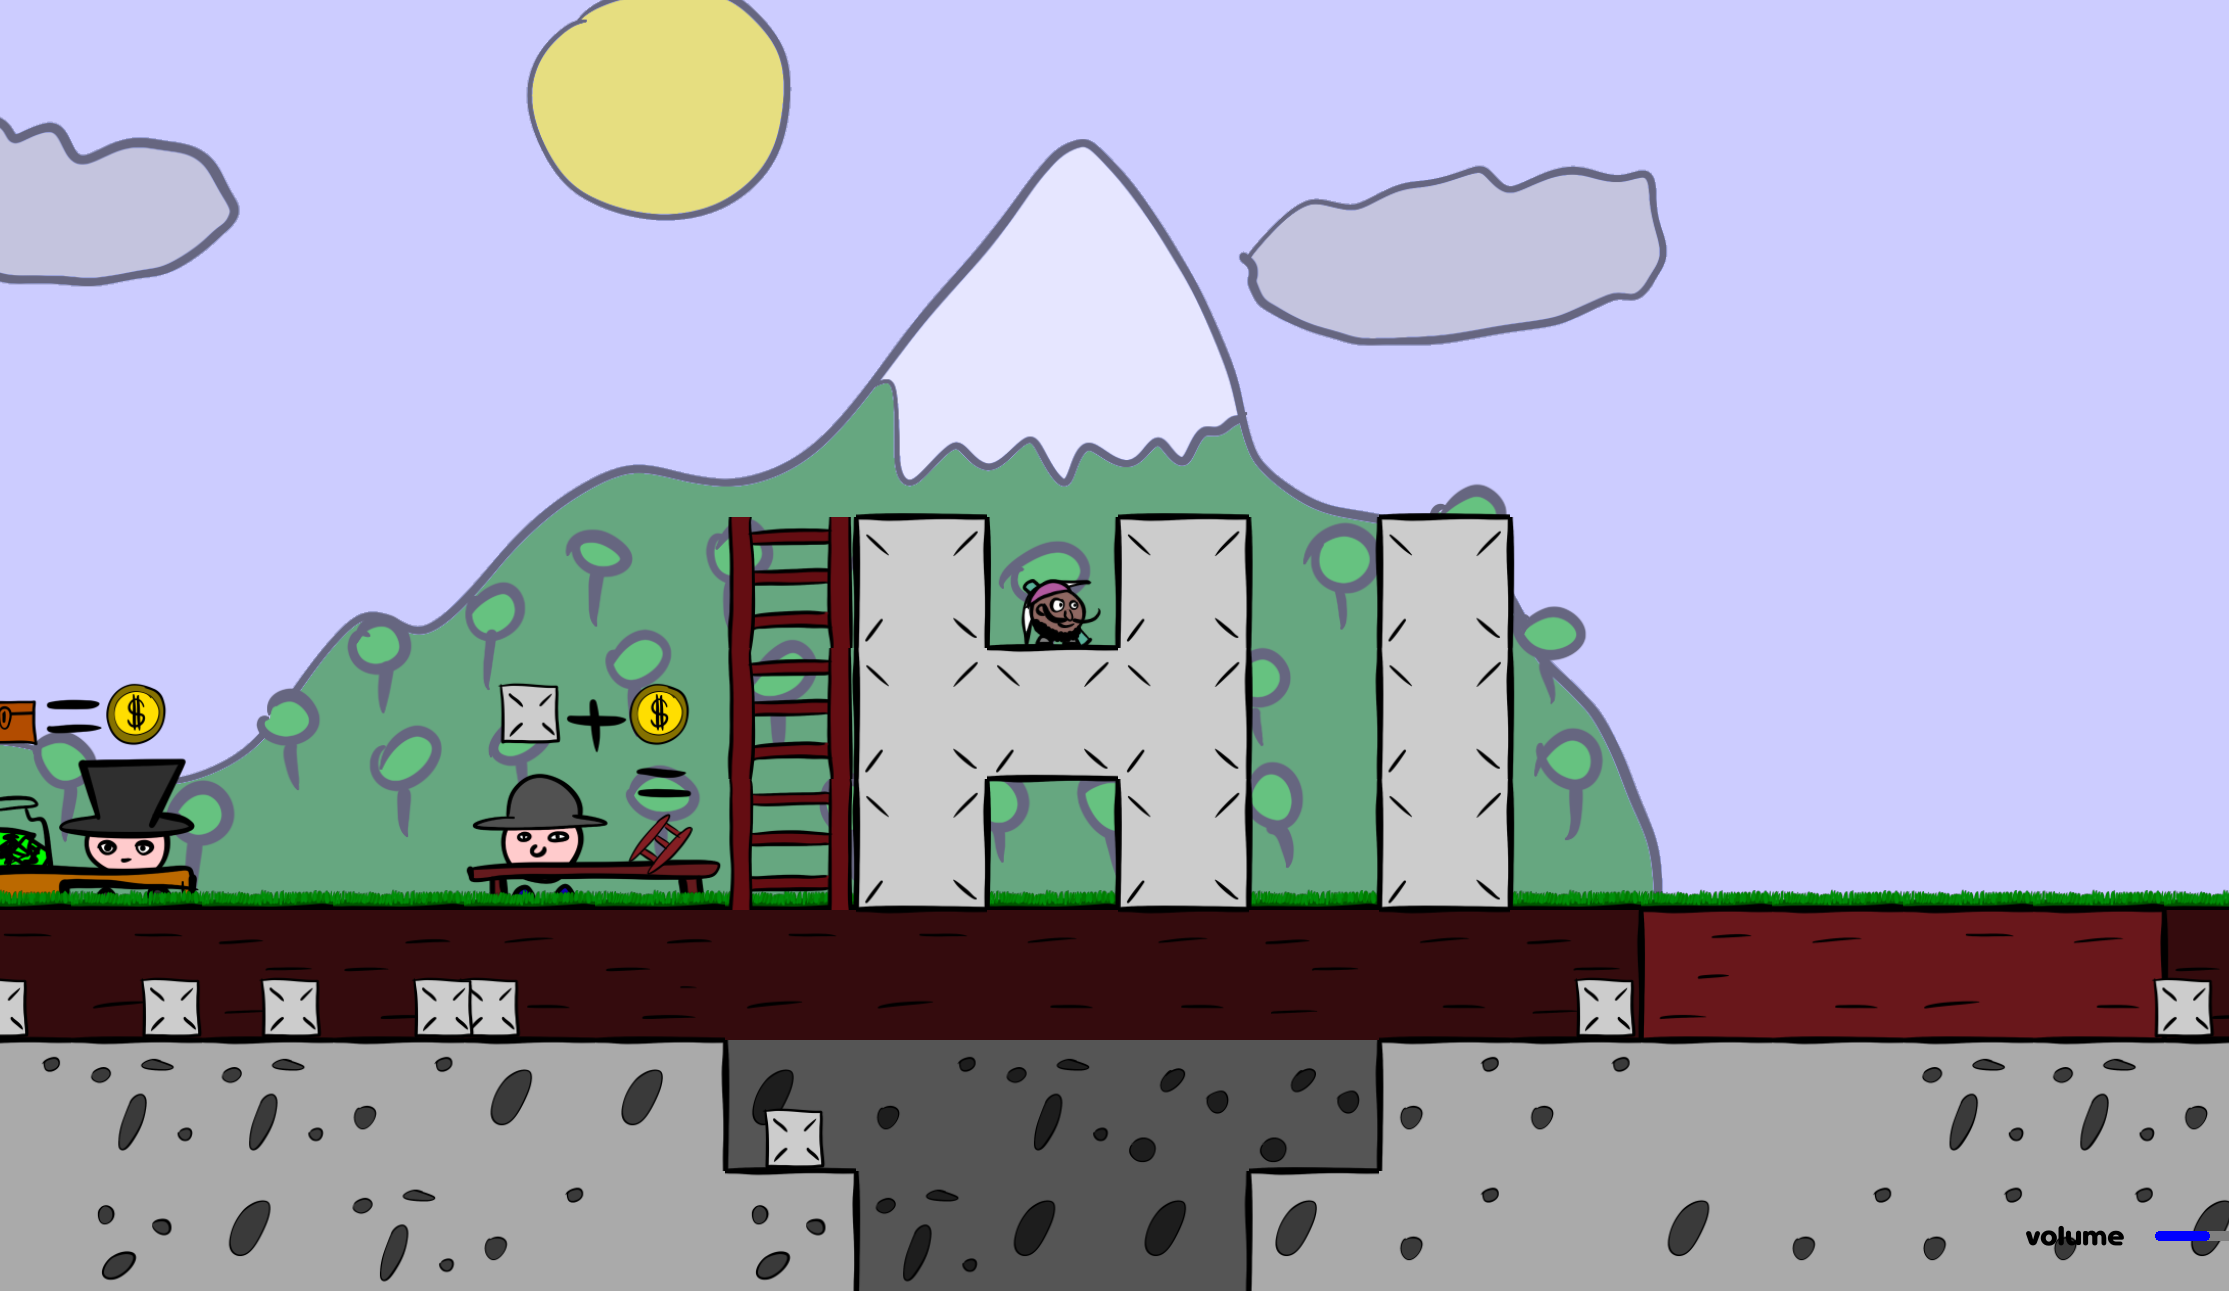 A screenshot of Dig World gameplay